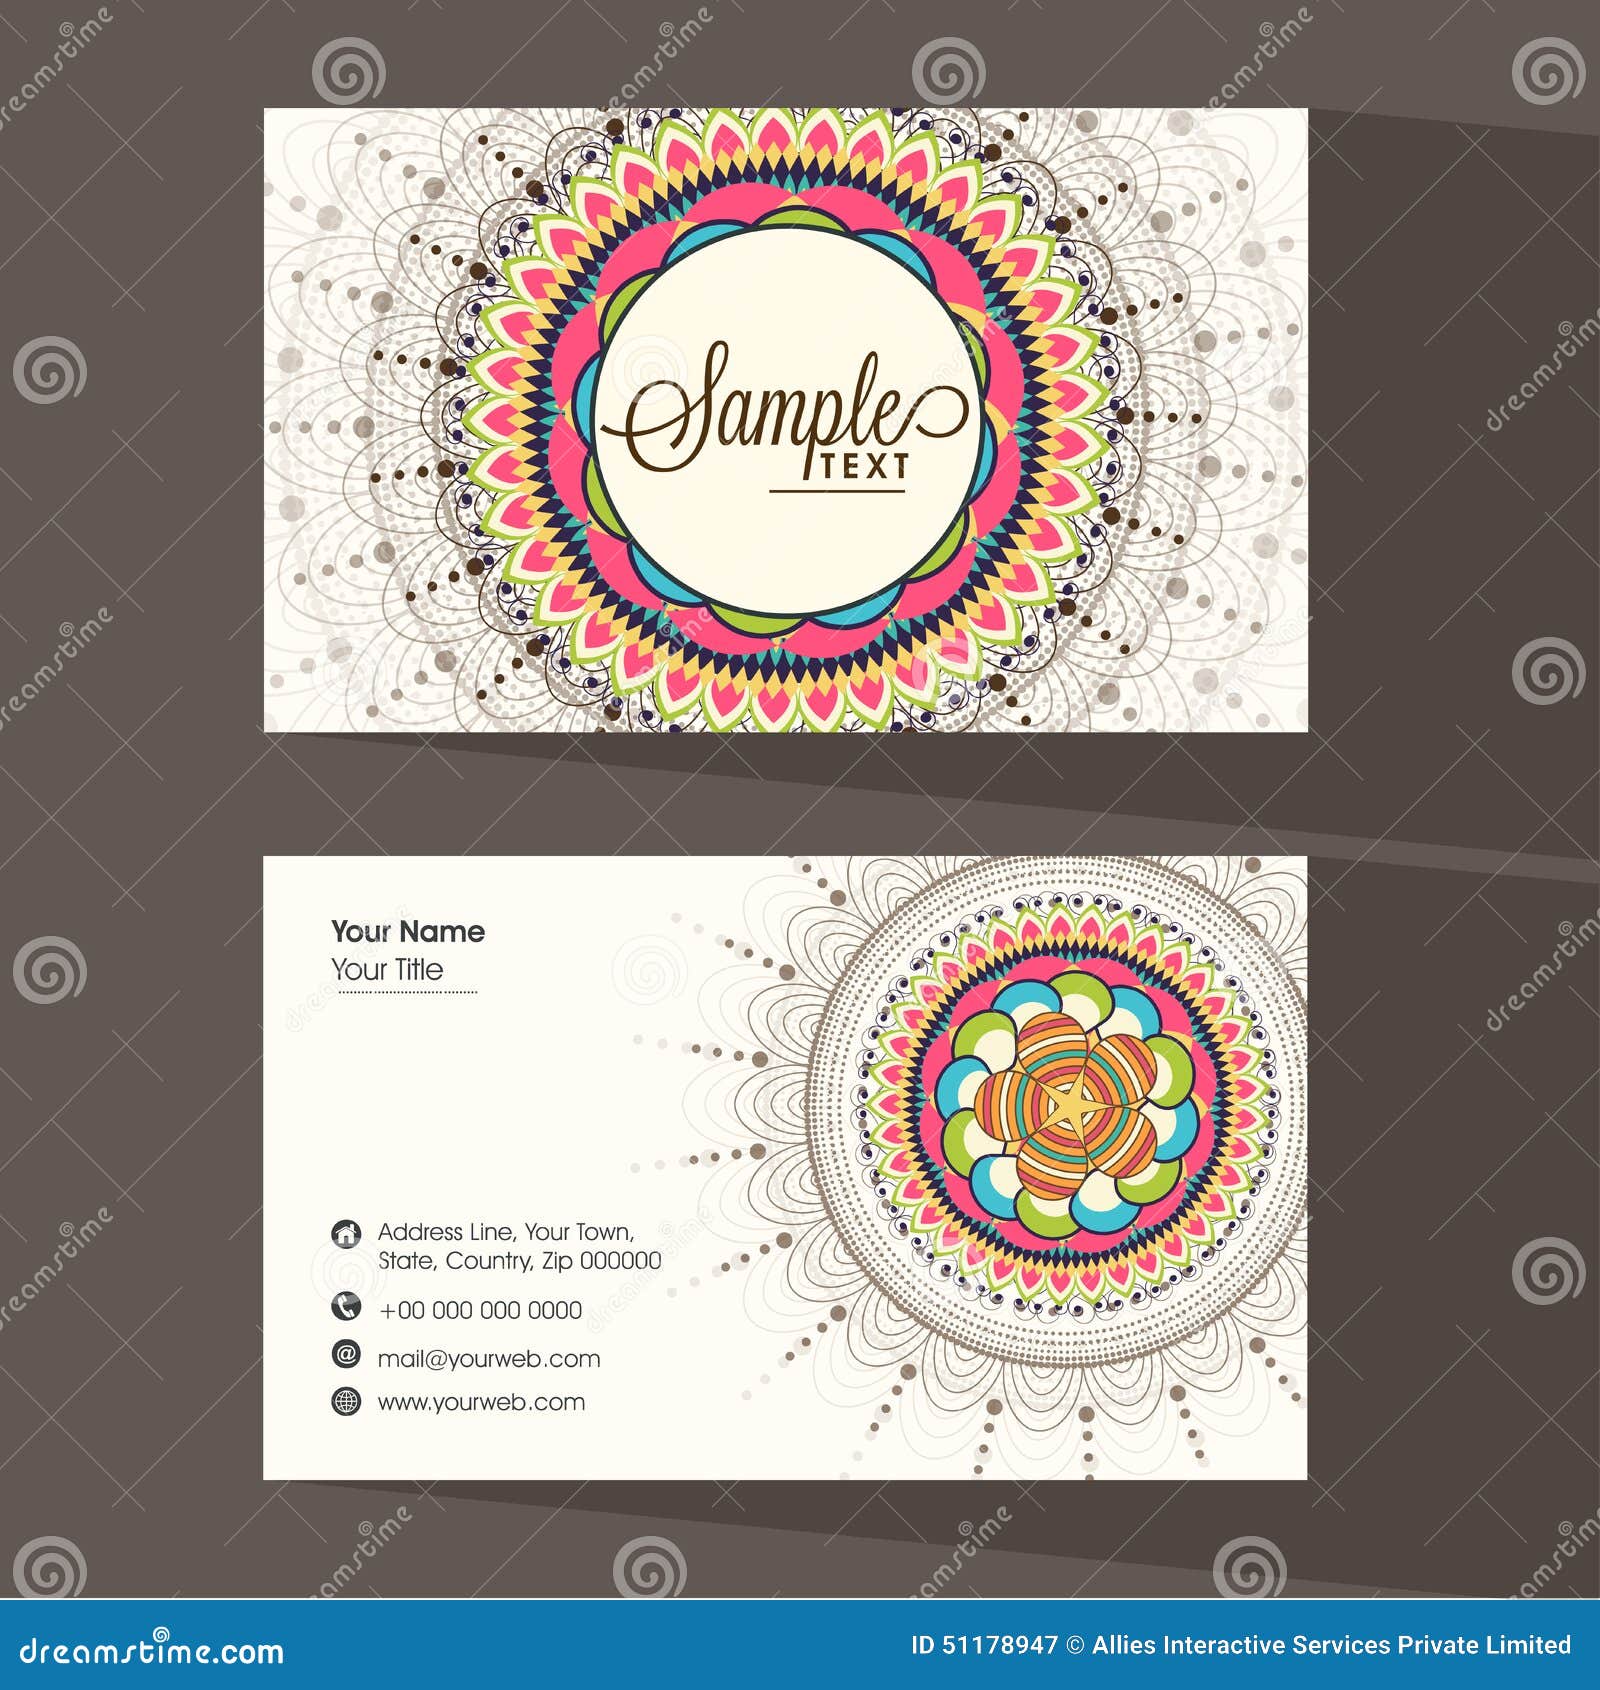 Business Visiting Card Design Sample Images - Card Design ...